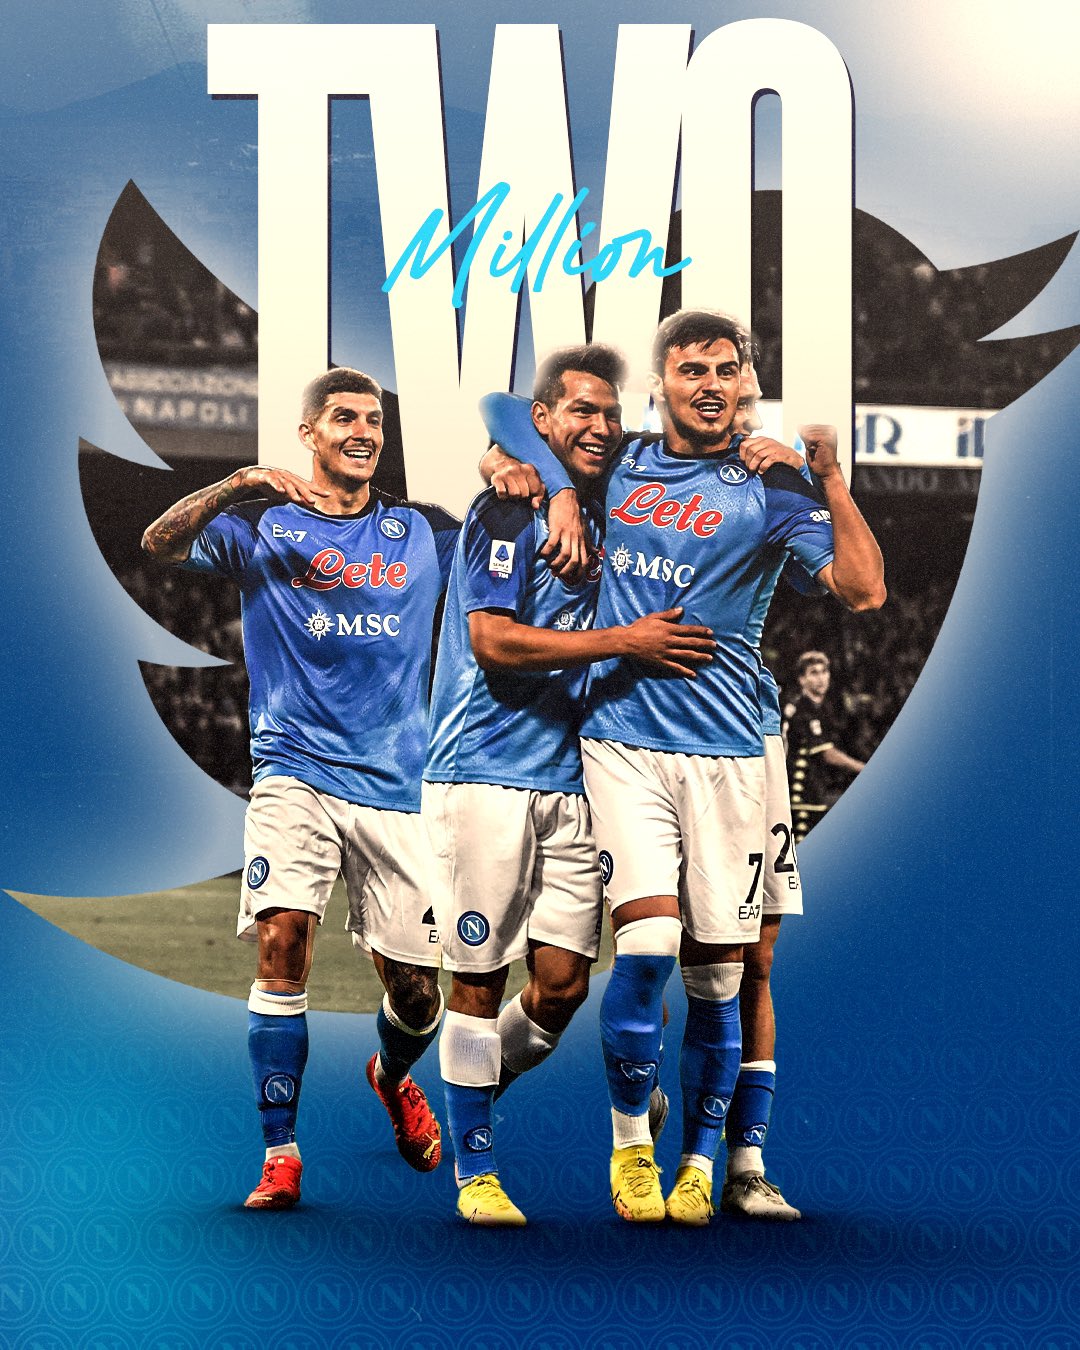 Official SSC Napoli on X: 2️⃣ milioni di cuori azzurri! 2️⃣ milioni di  volte 𝓕𝓸𝓻𝔃𝓪 𝓝𝓪𝓹𝓸𝓵𝓲 𝓢𝓮𝓶𝓹𝓻𝓮 💙  / X